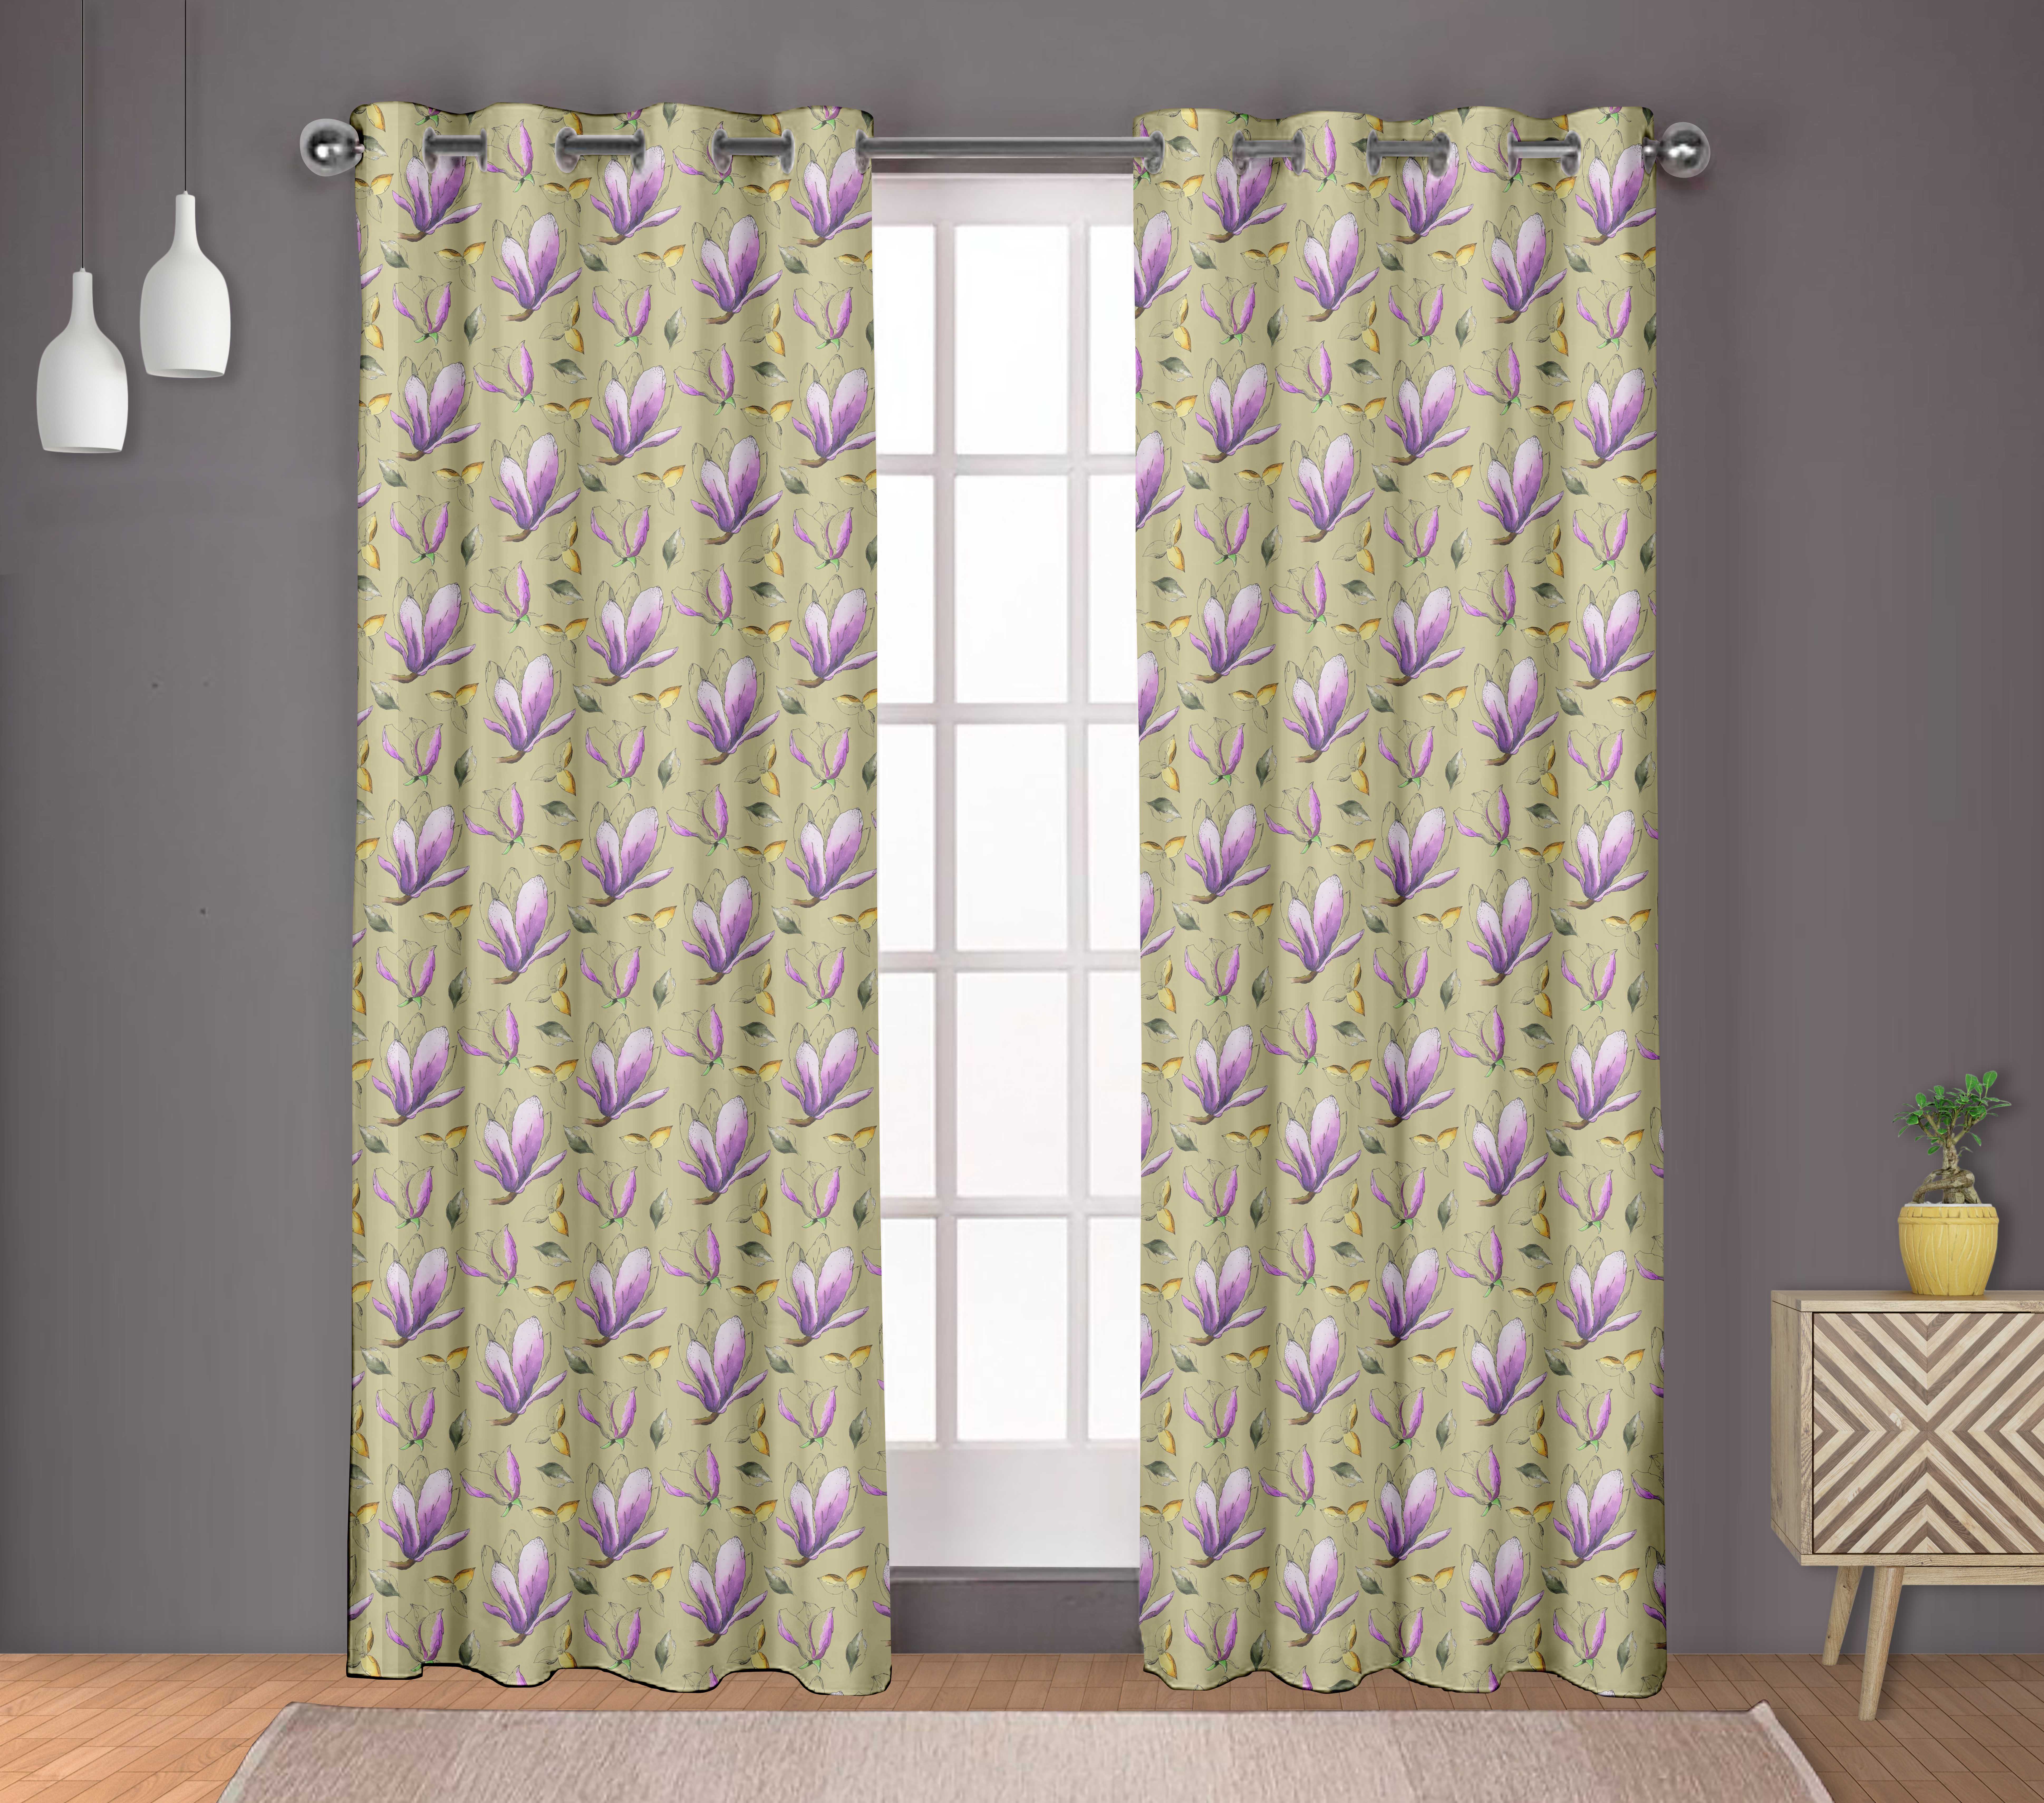 S4sassy Blossom & Bulbul Bedroom short & long Window  Eyelet Curtains BRD-518I 